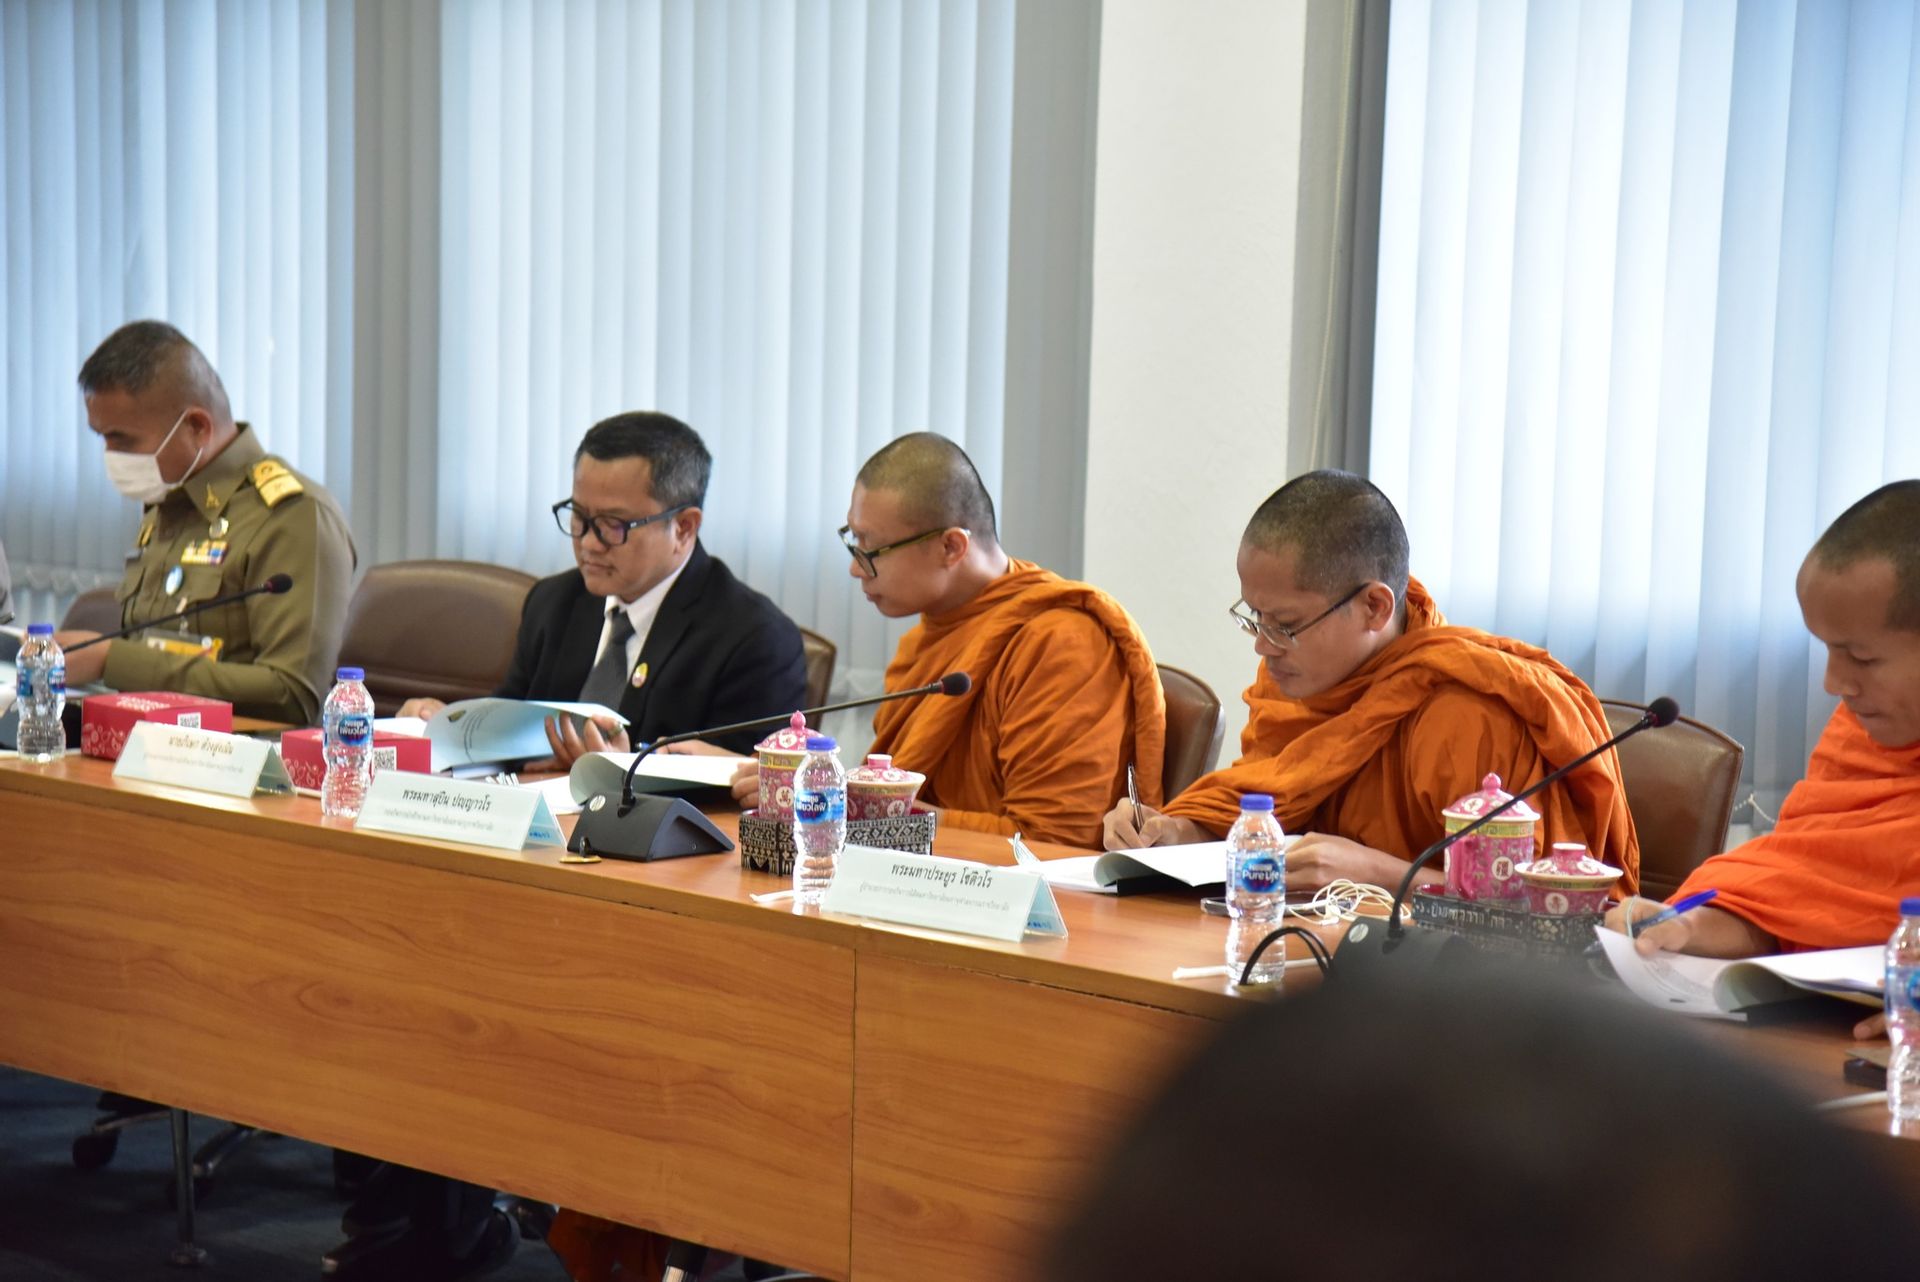 ประชุมรวบรวมข้อมูลผู้ขอรับทุนฯ โครงการทุนเล่าเรียนหลวงสำหรับพระสงฆ์ไทย